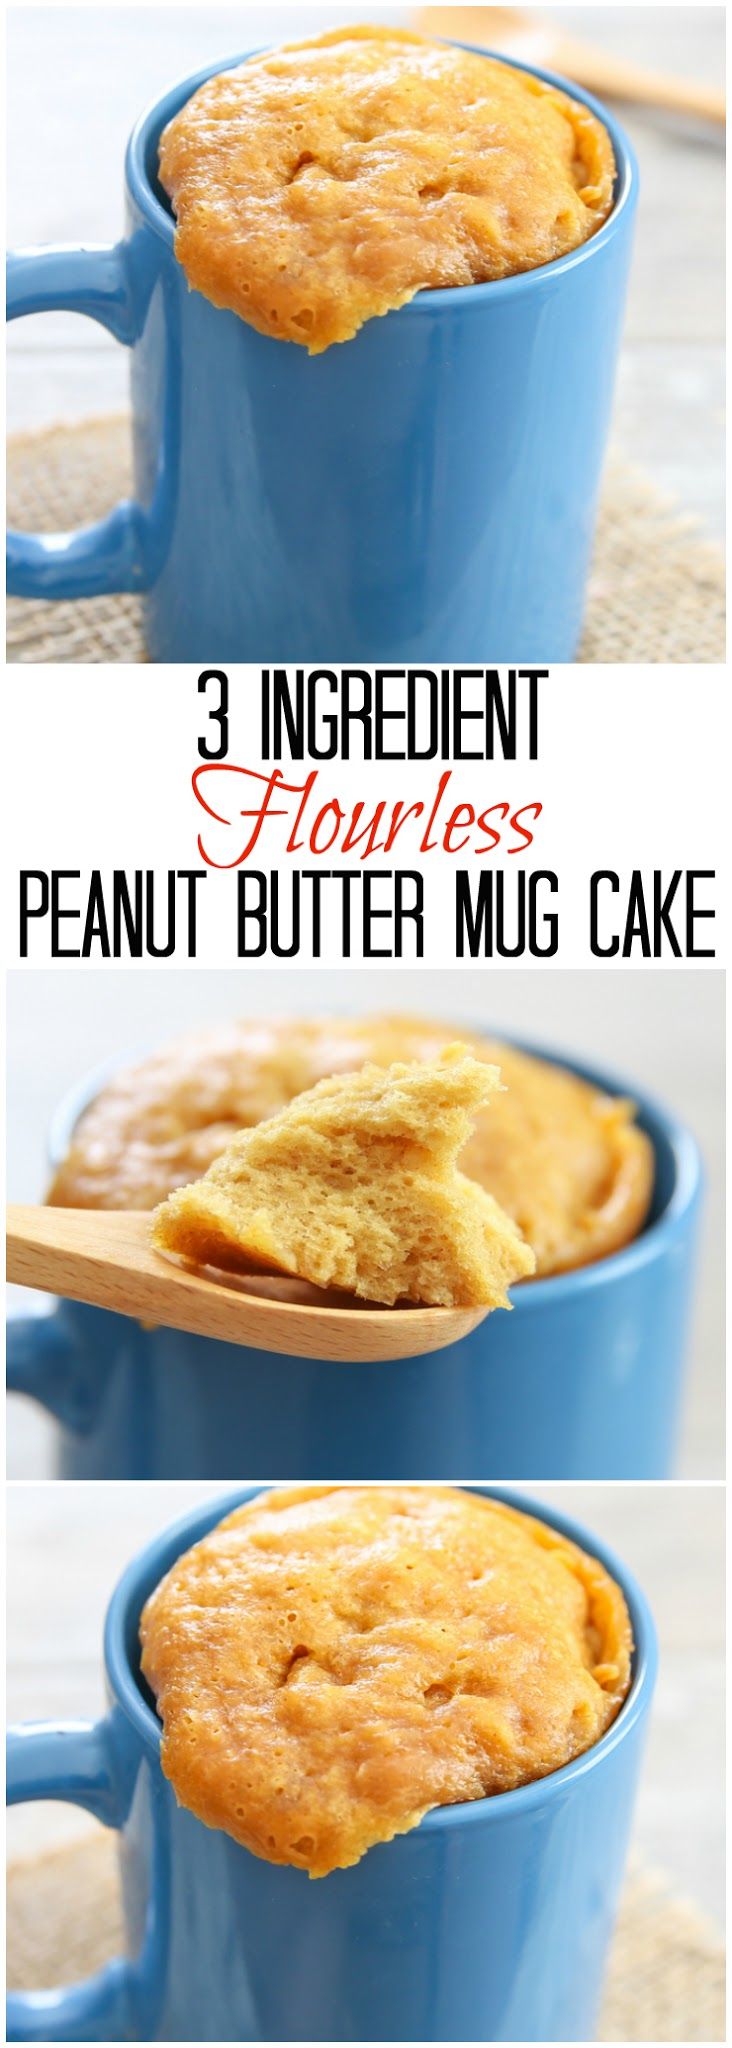 peanut butter mug cake